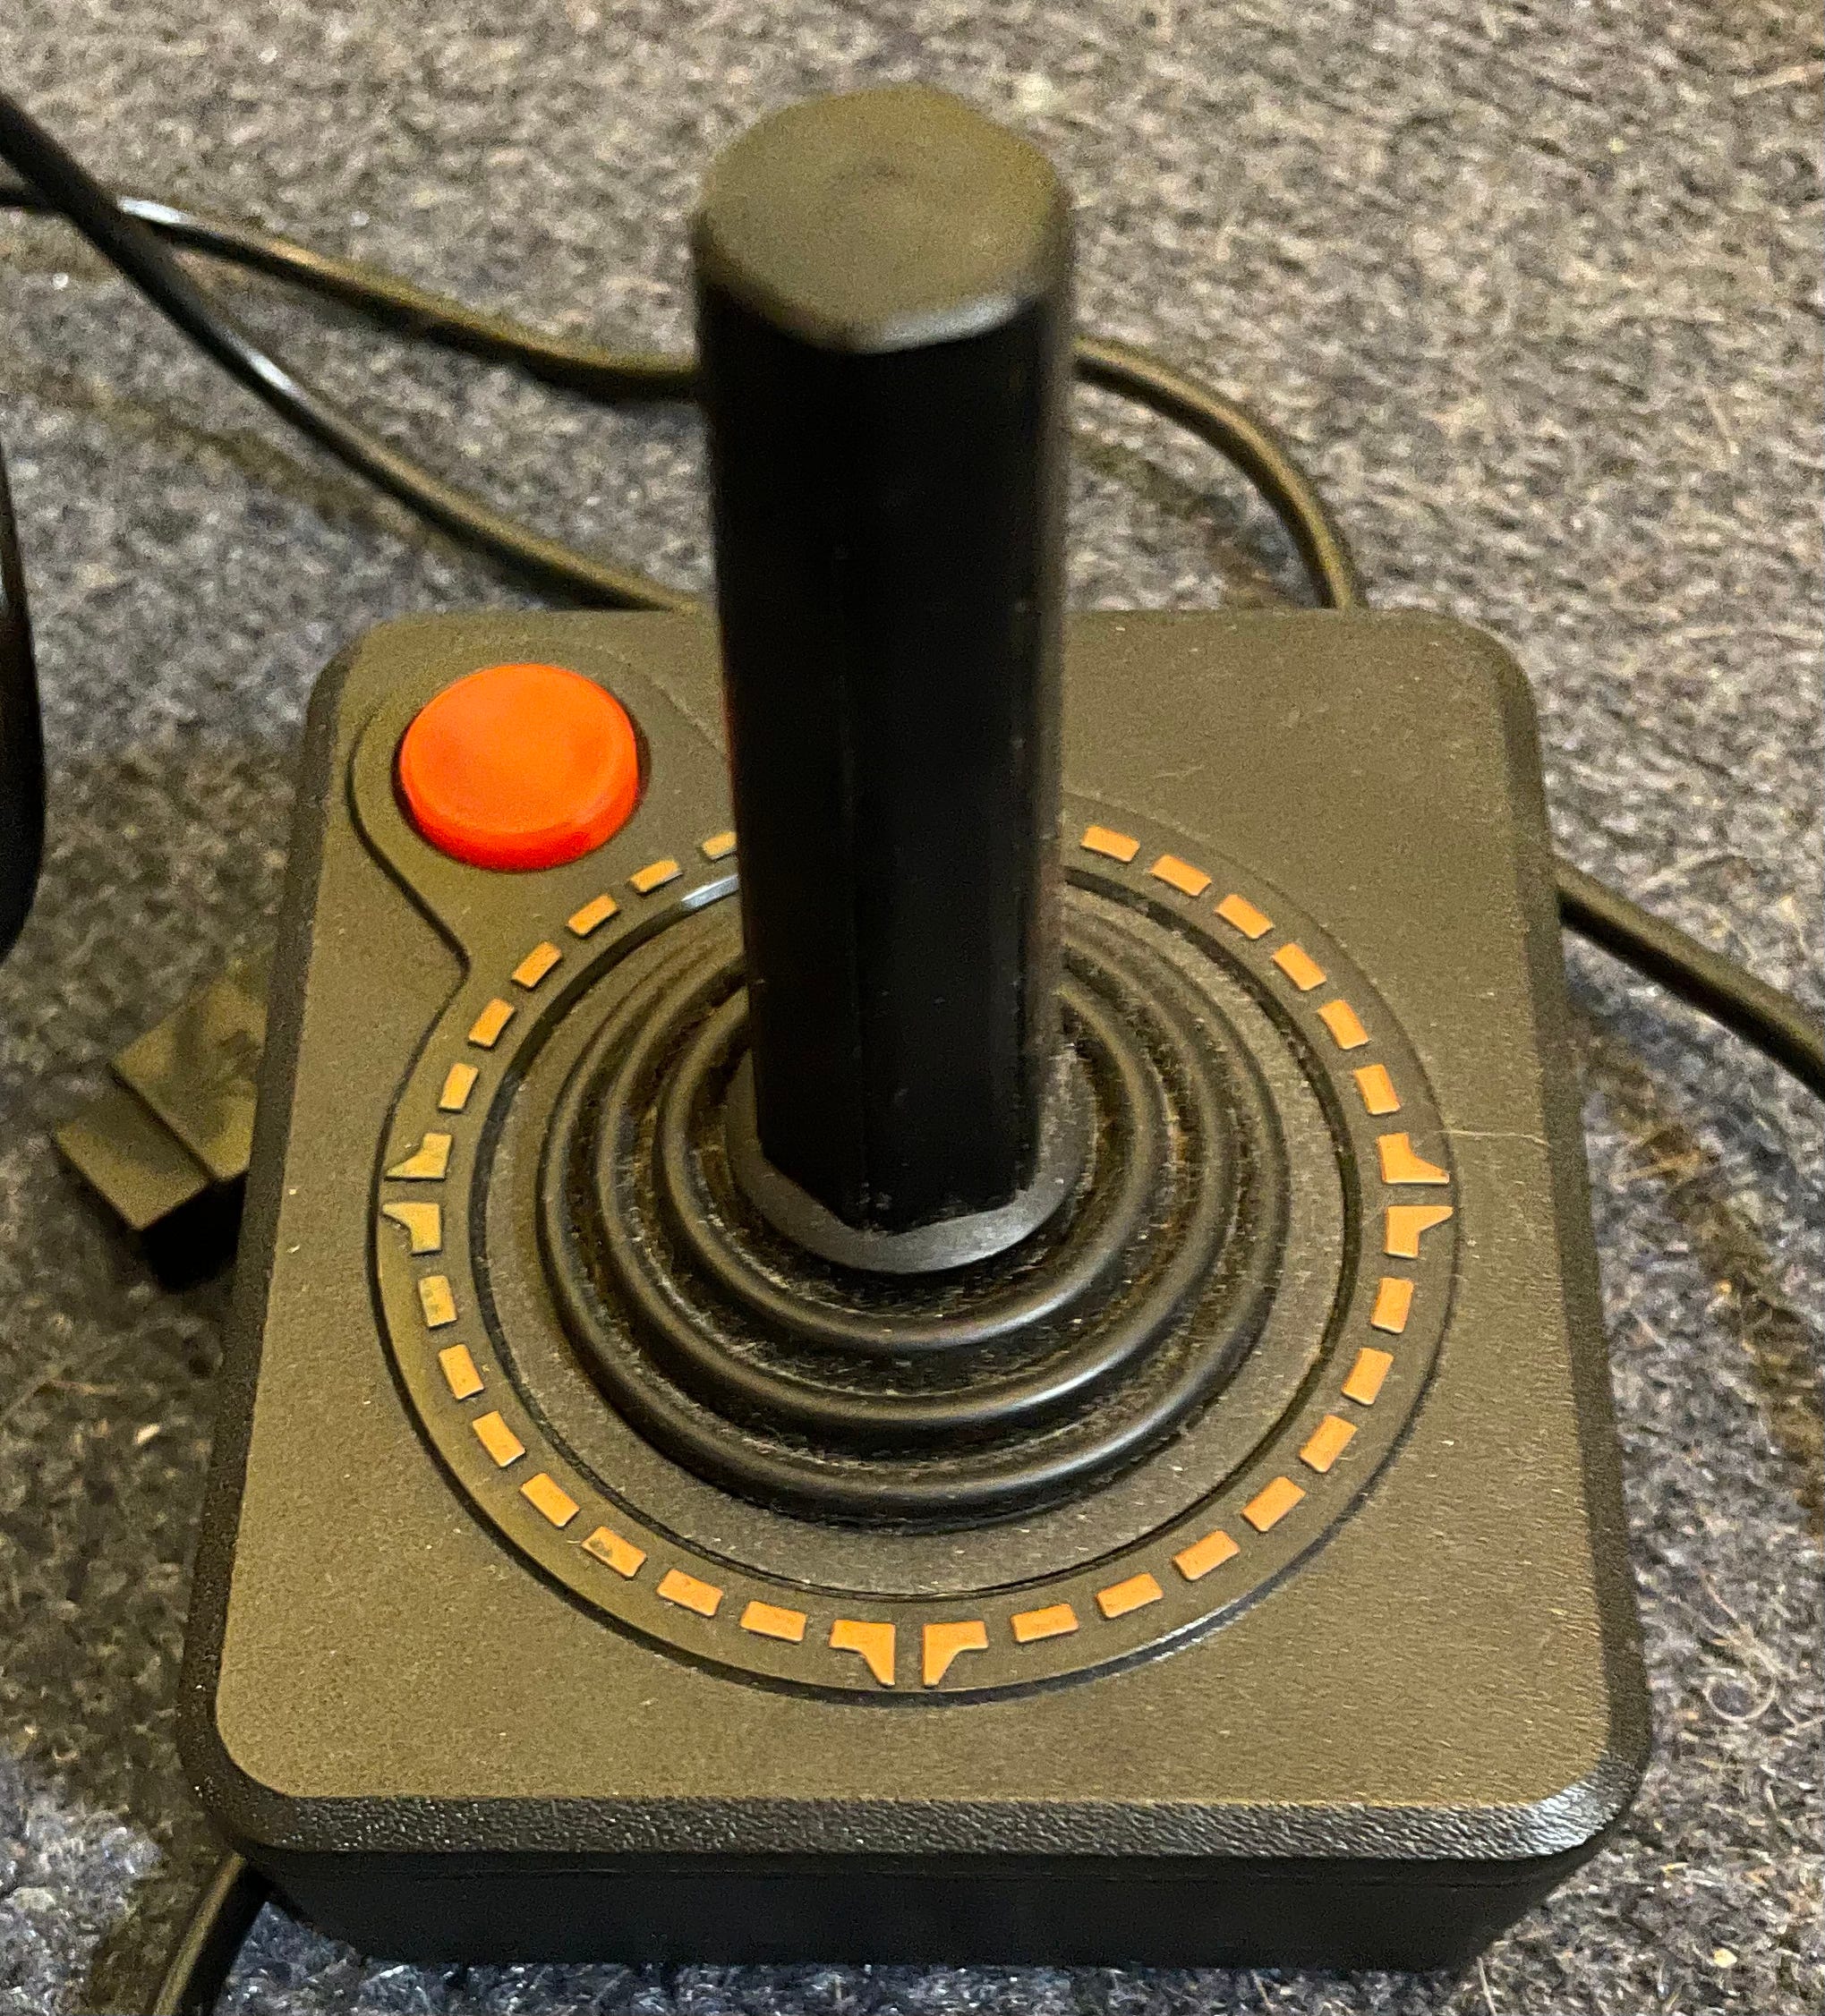 Ydmyg træner indendørs Retro Joysticks and Game Controllers - by Paul Lefebvre